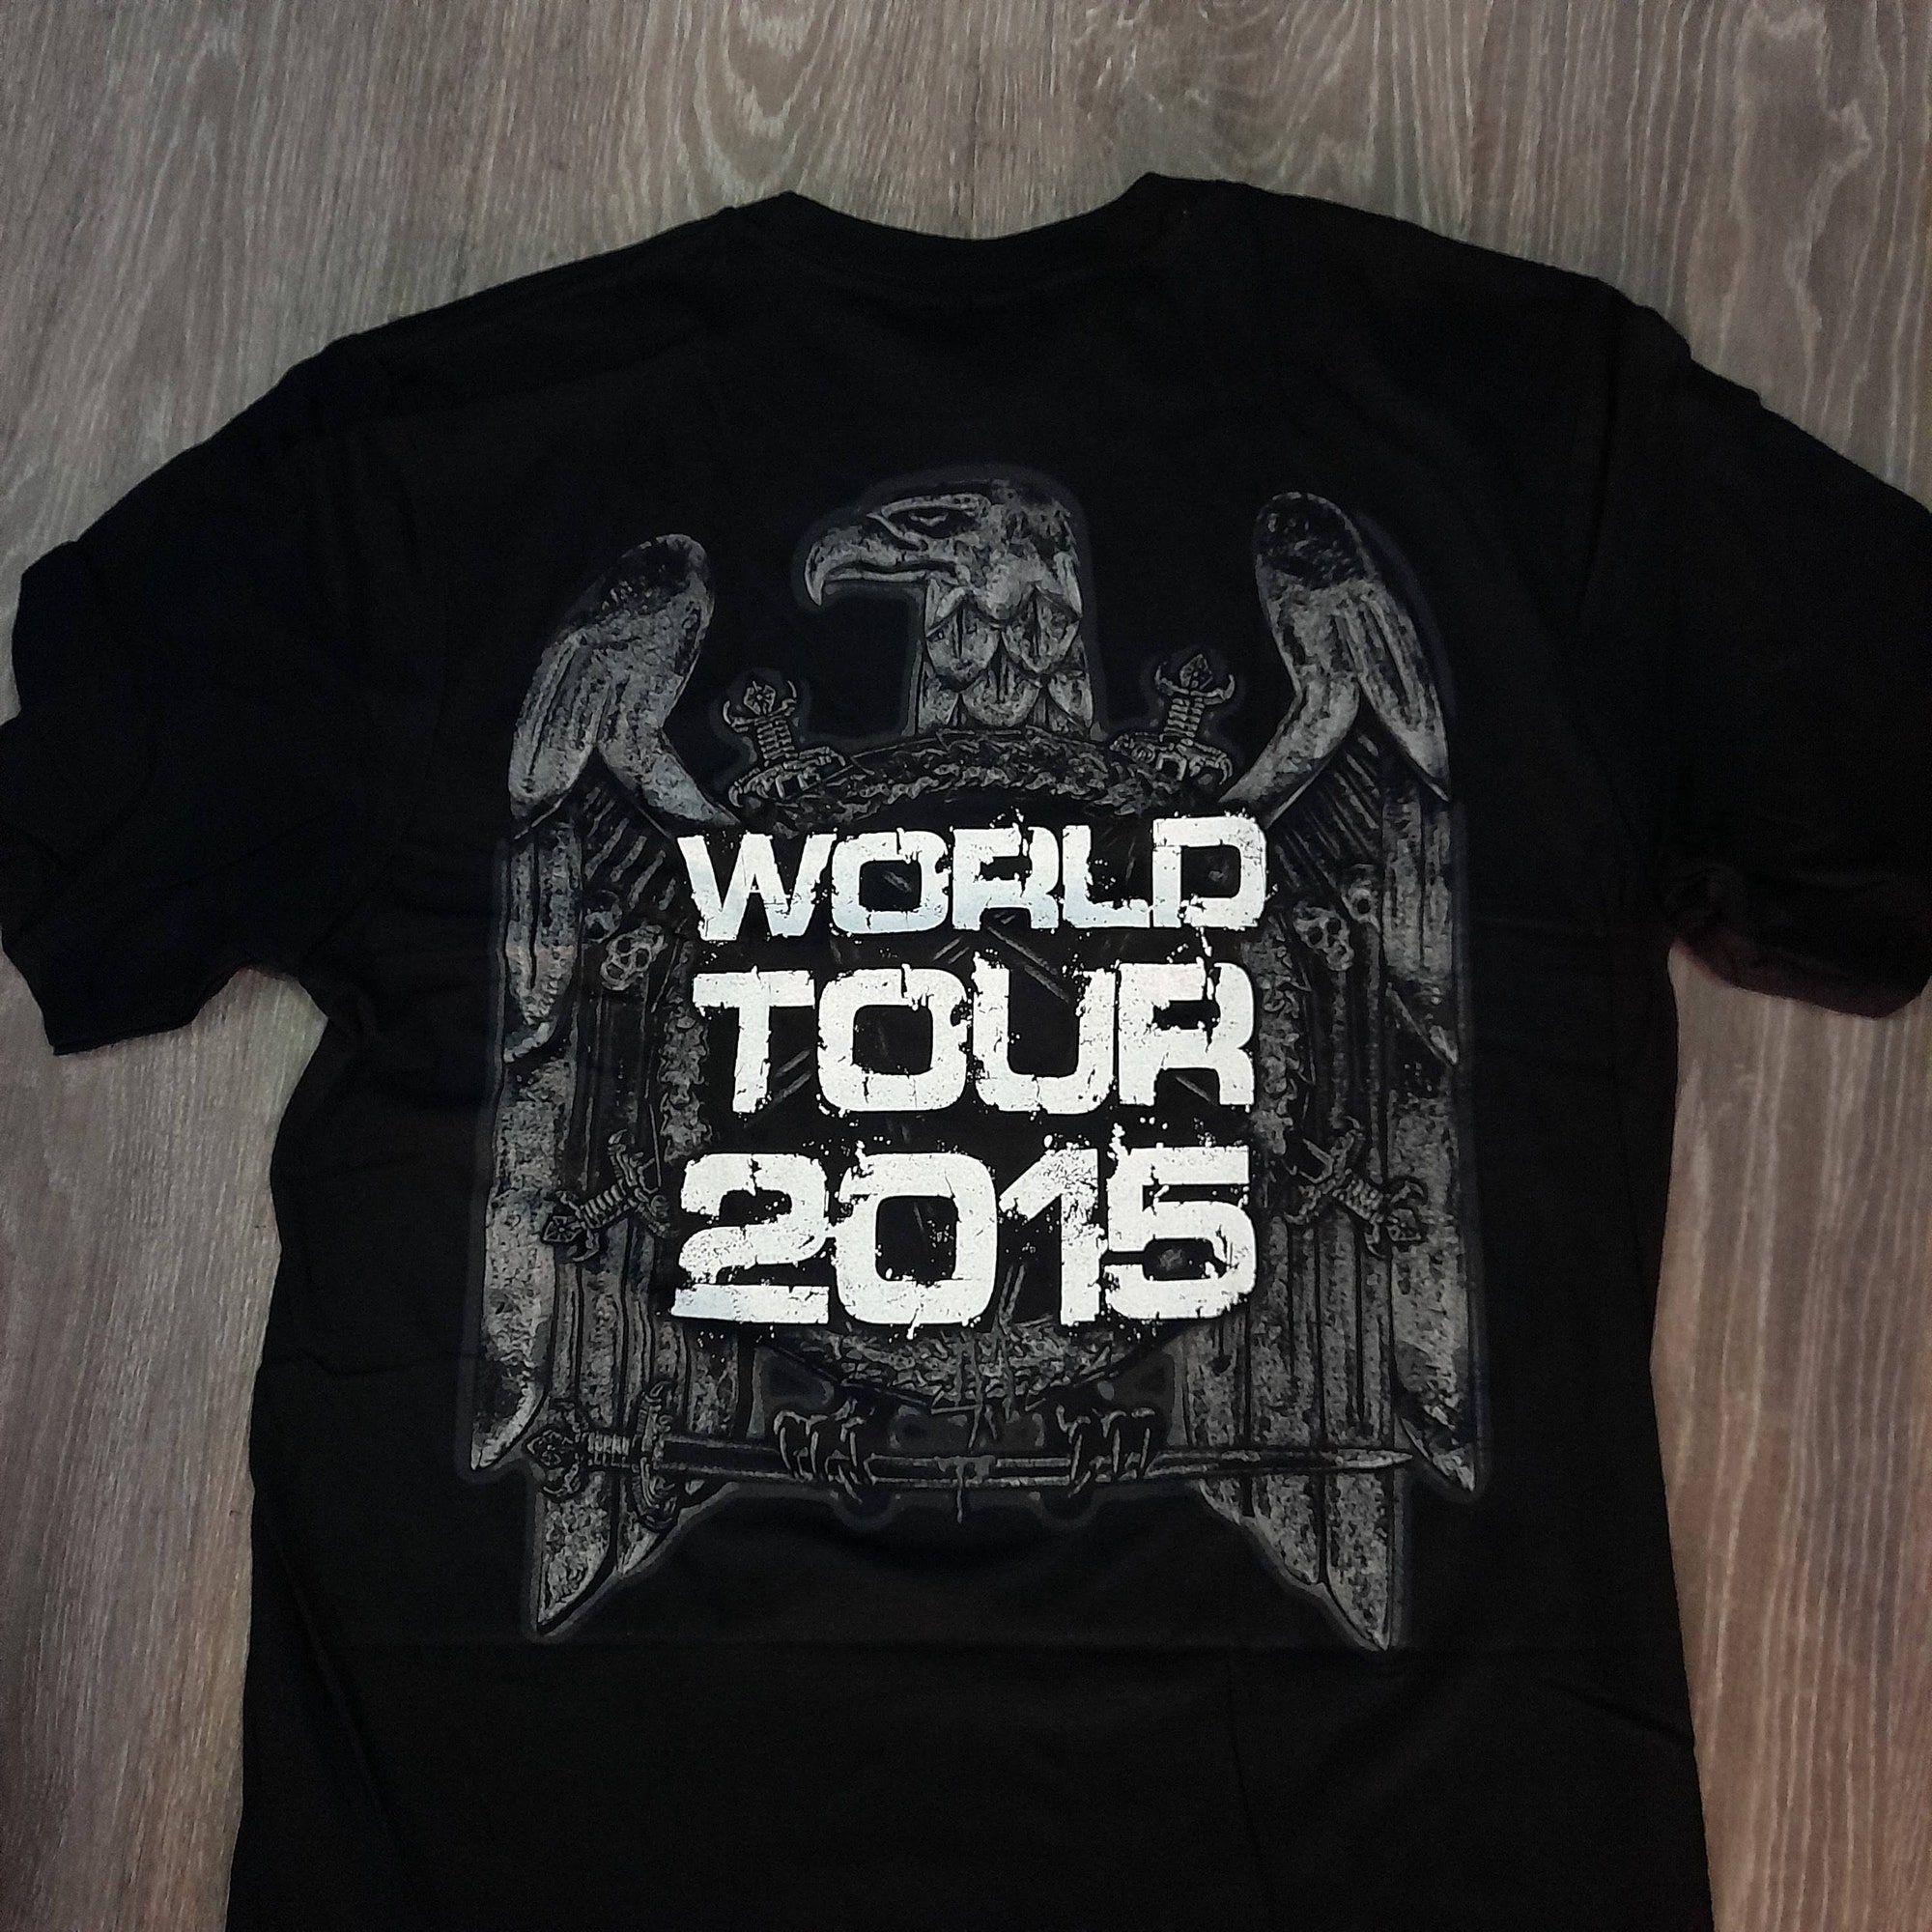 Slayer - Slayer Nation - Slayer World Tour 2015 - Thrash Metal